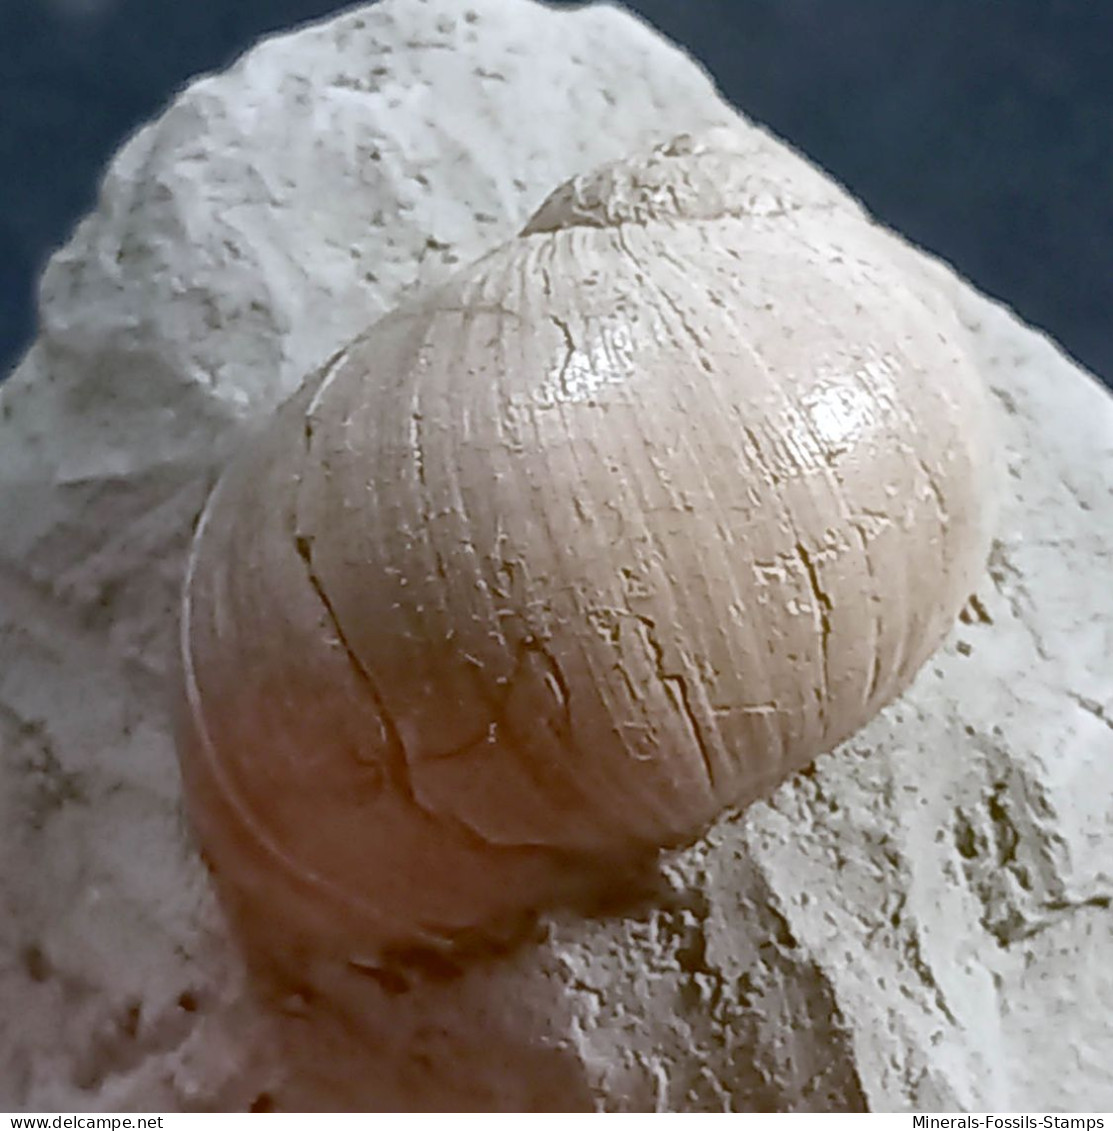 #UKR02 - PAYRAUDEAUTIA VAROVTSIANA, Fossile, Miozän (Ukraine)